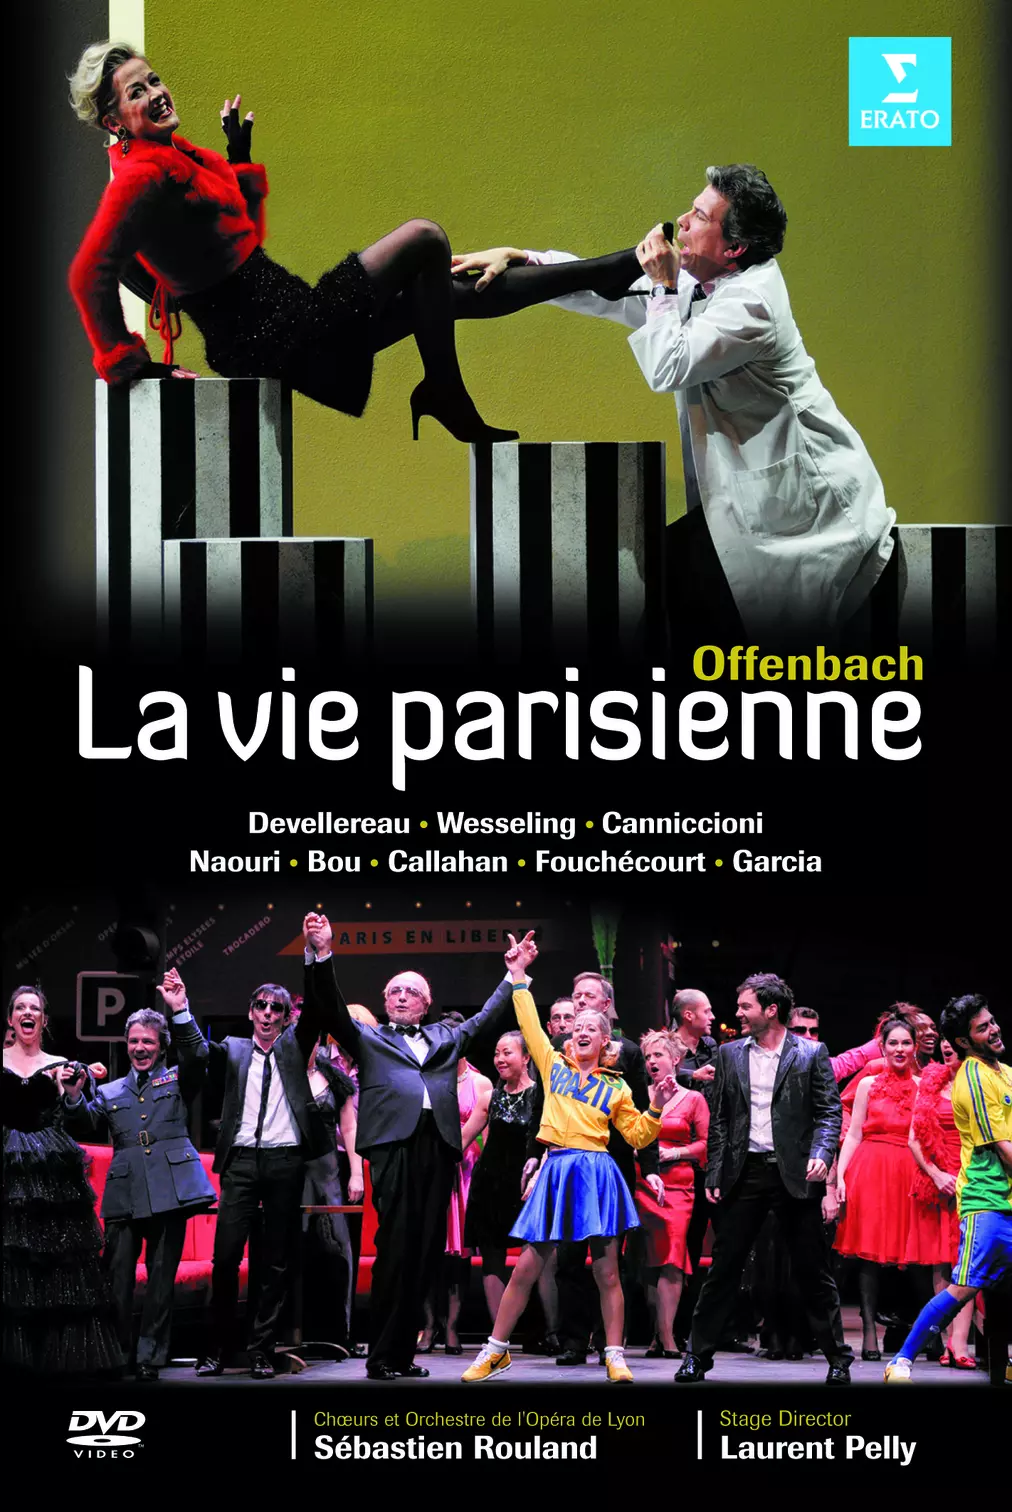 Offenbach: La Vie parisienne